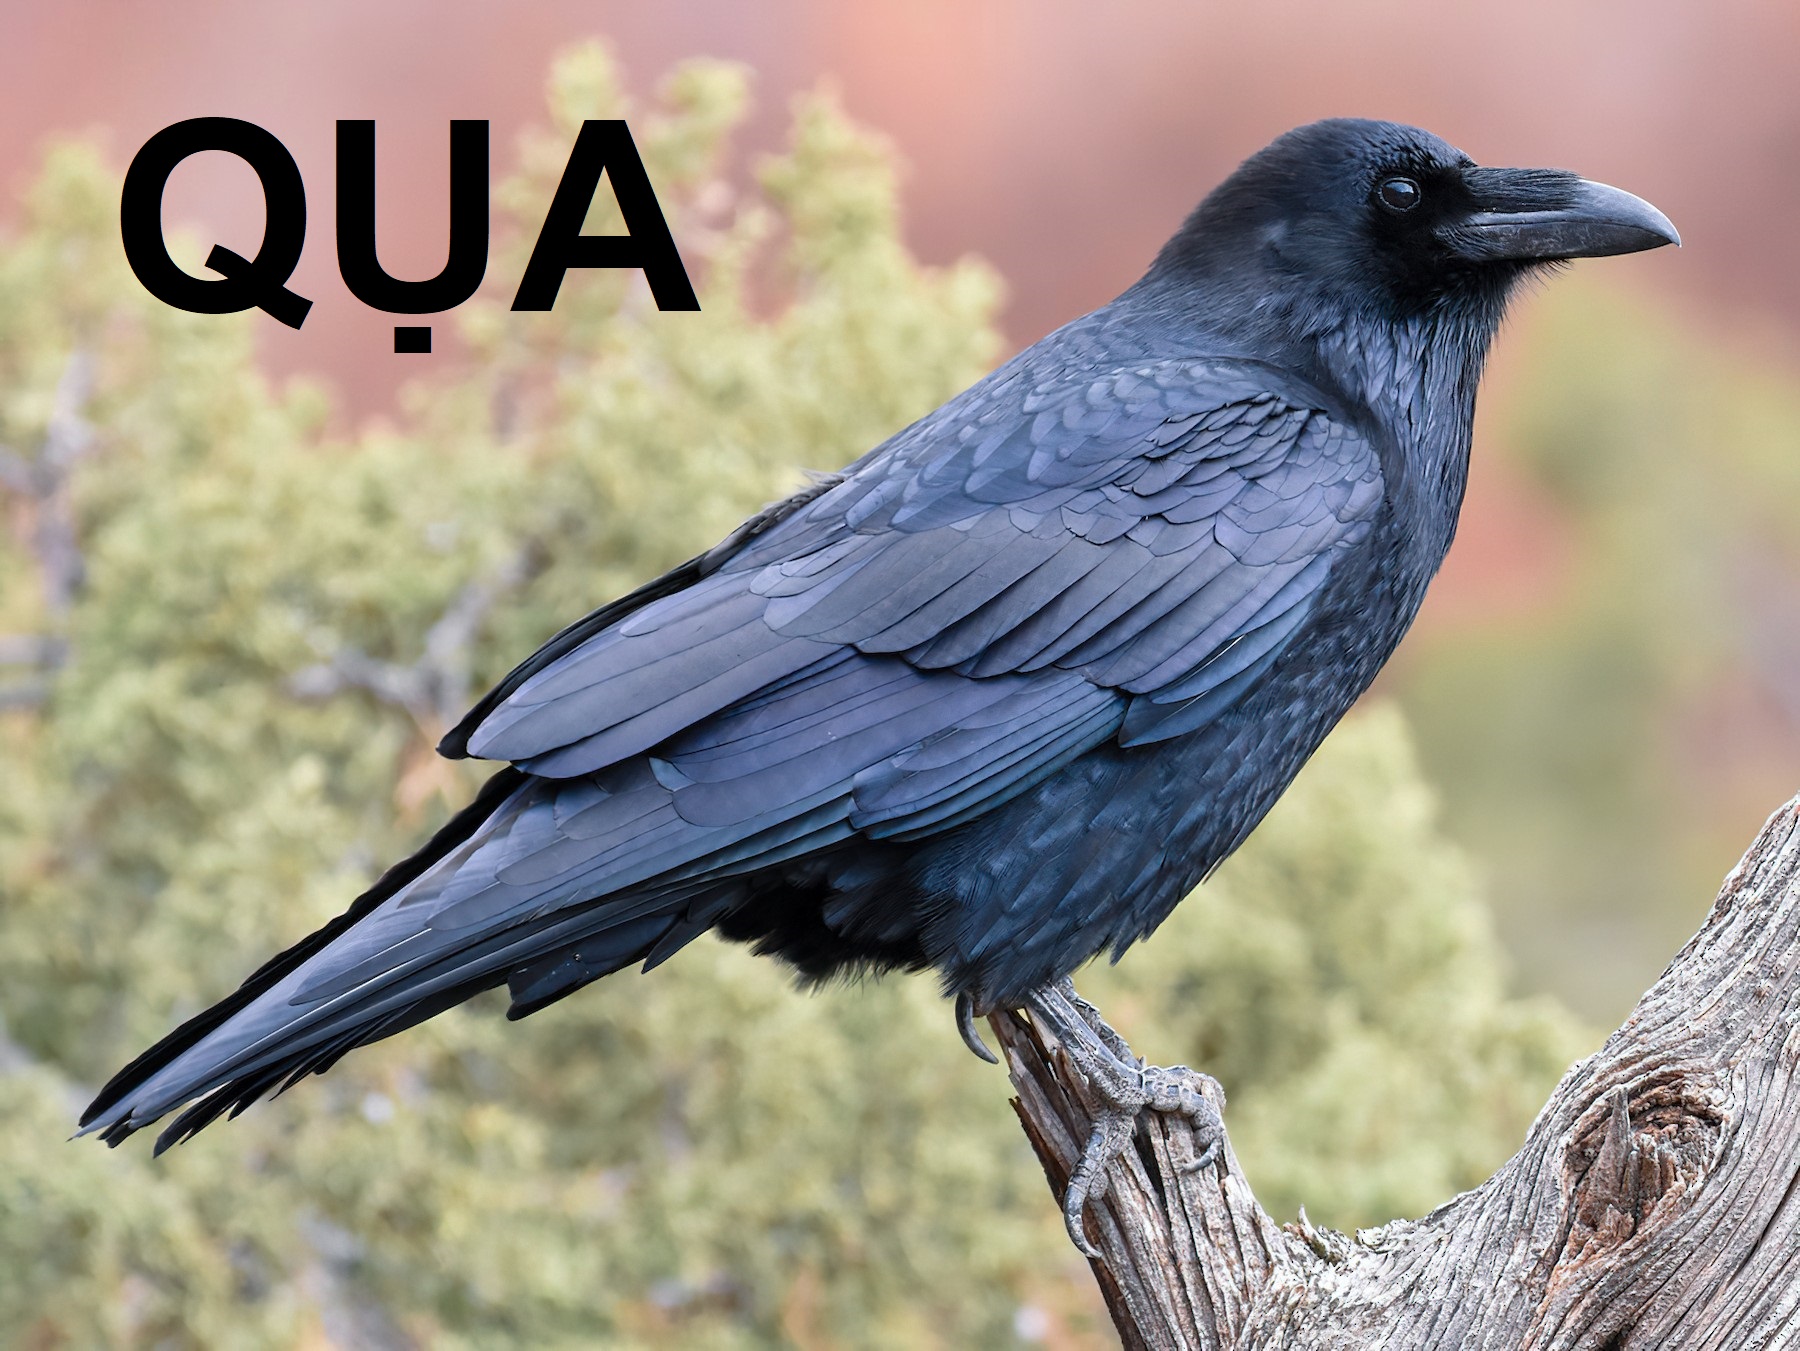 Học tiếng Anh dễ dàng hơn với hình ảnh về loài chim quạ và bộ từ vựng liên quan. Tạo ra câu hỏi và trả lời cho nhau để rèn luyện kỹ năng ngôn ngữ tiếng Anh của bạn ngay từ hôm nay.